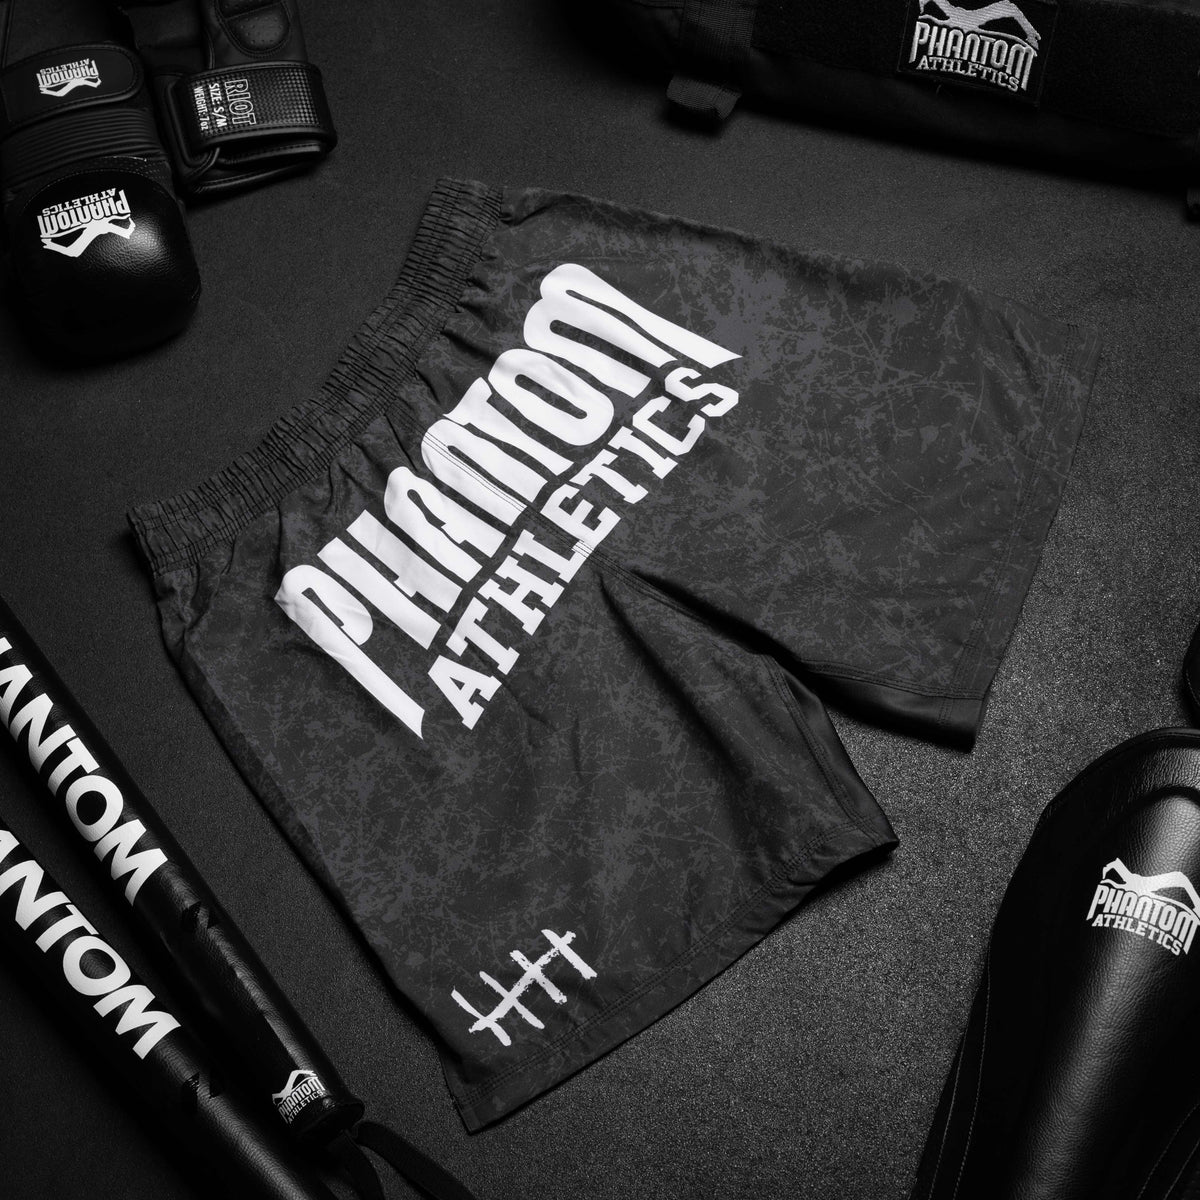 Die Phantom Serious MMA Shorts im Smiley Design für deinen Kampfsport. Mit großem Phantom Schriftzug auf der Rückseite. 